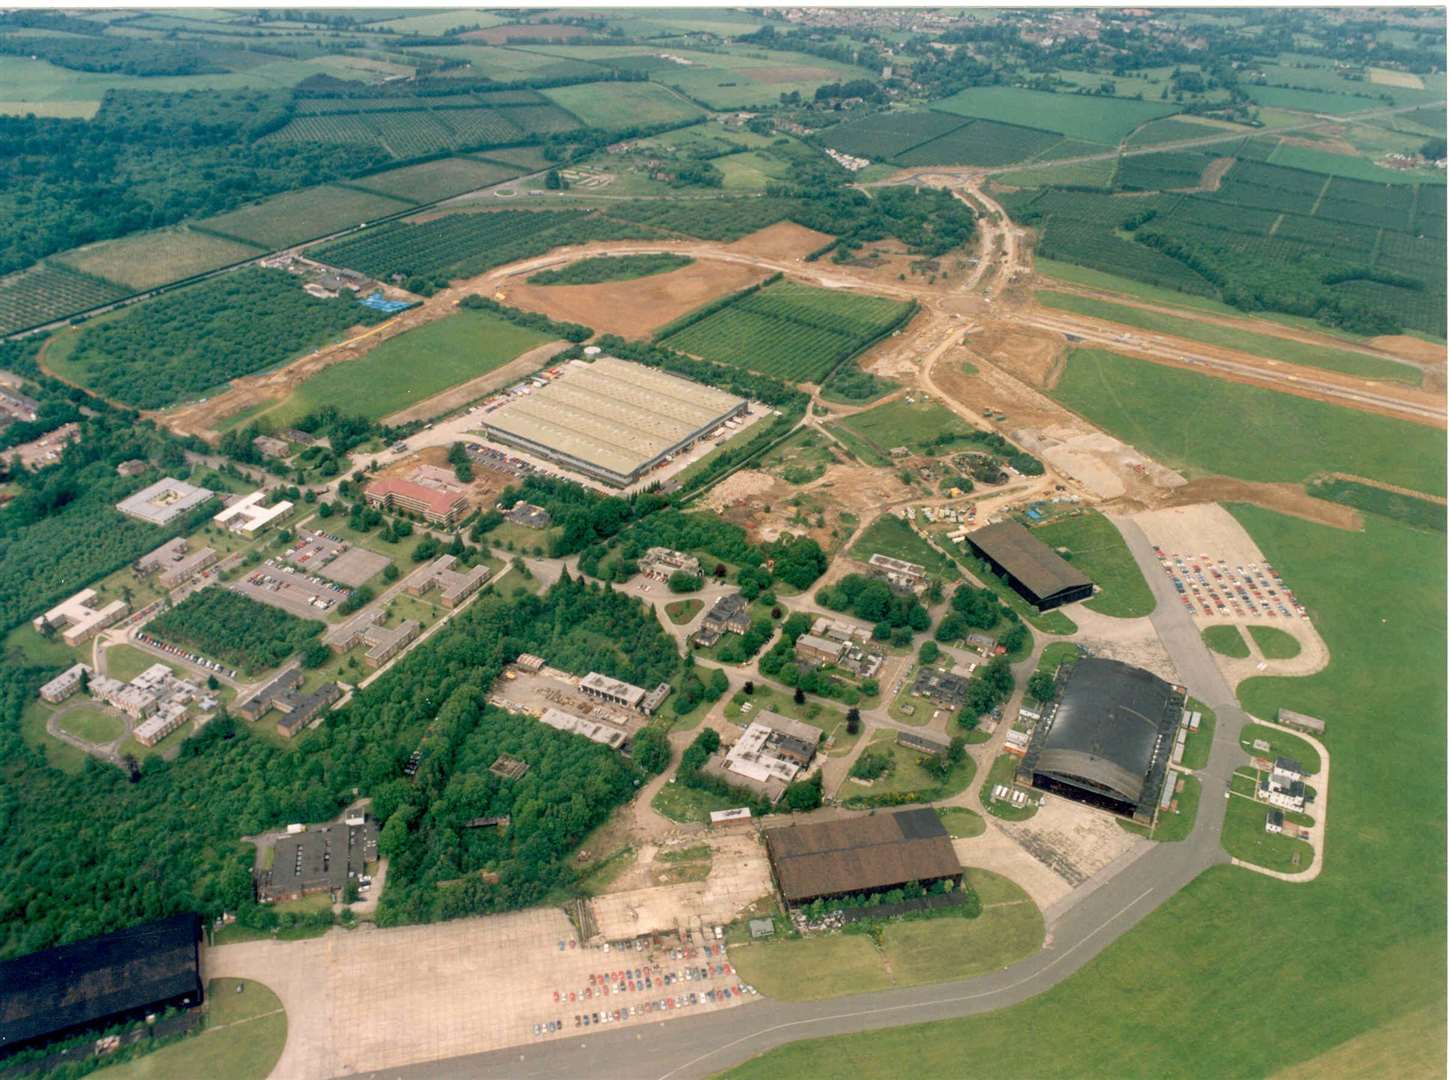 The sprawling Kings Hill development taking shape in 1991